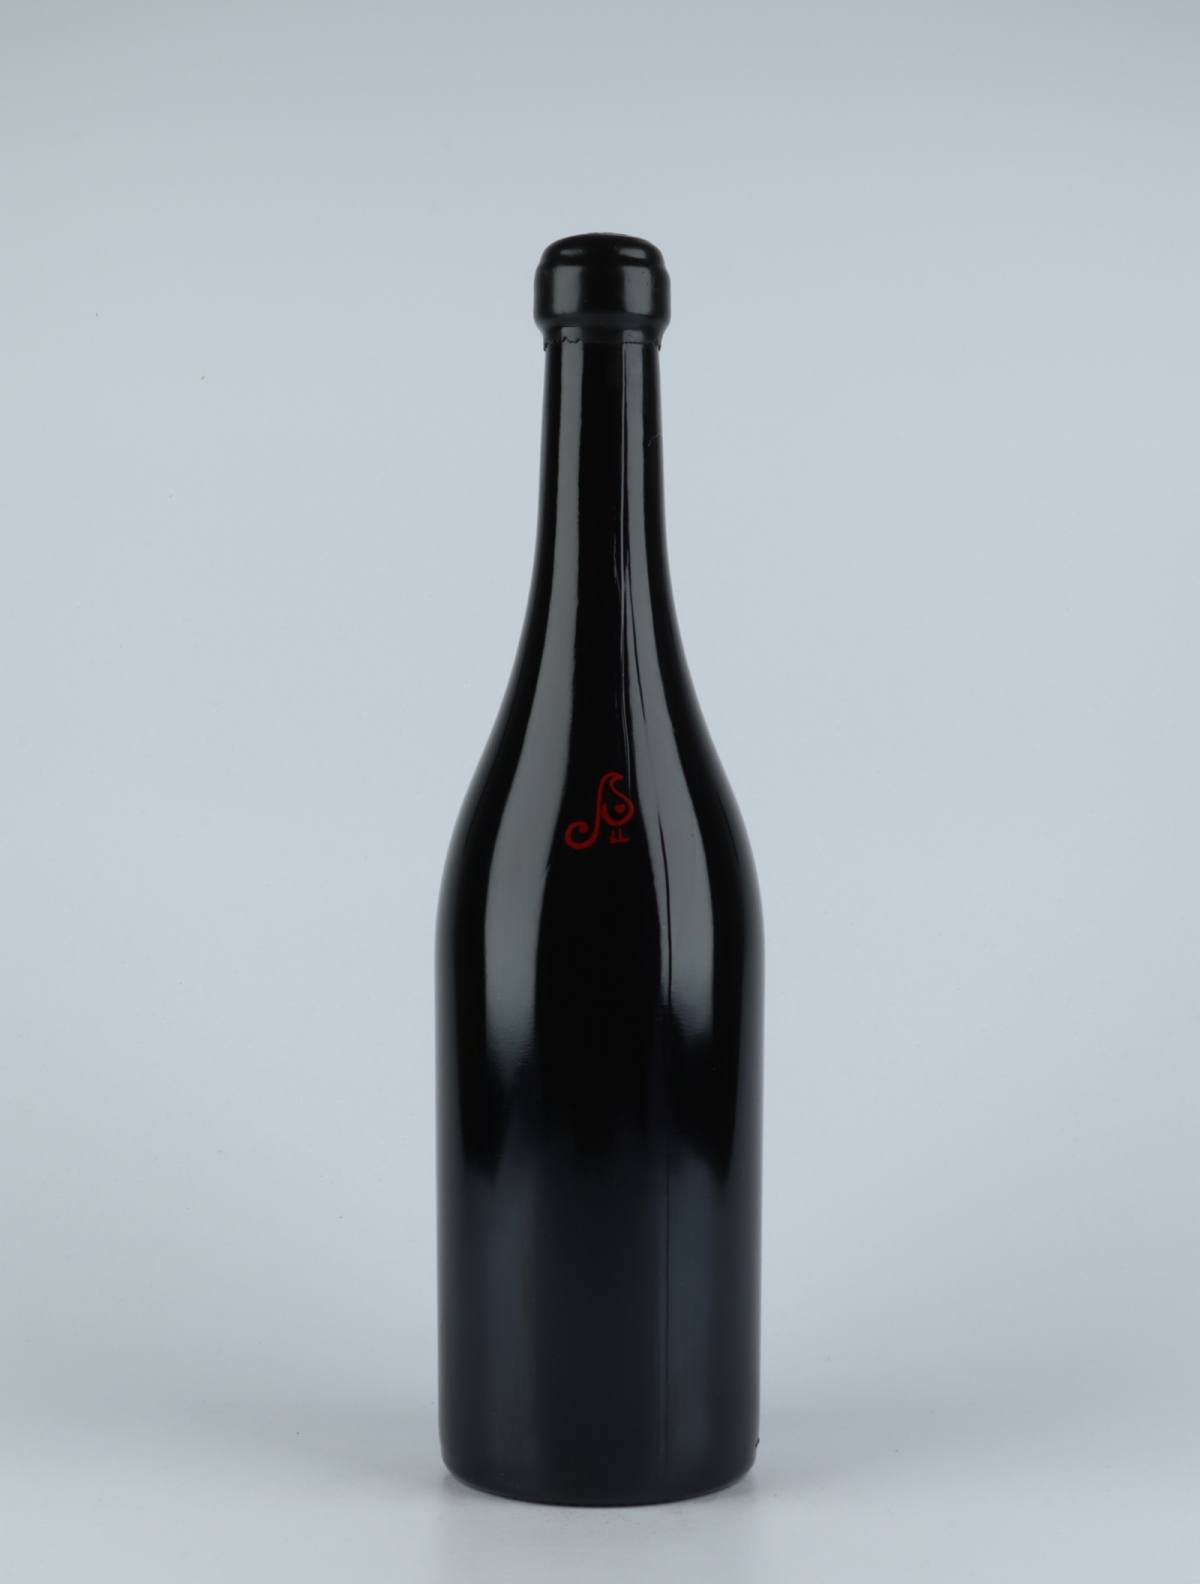 En flaske 2014 Vi Negre Rødvin fra Els Jelipins, Penedès i Spanien